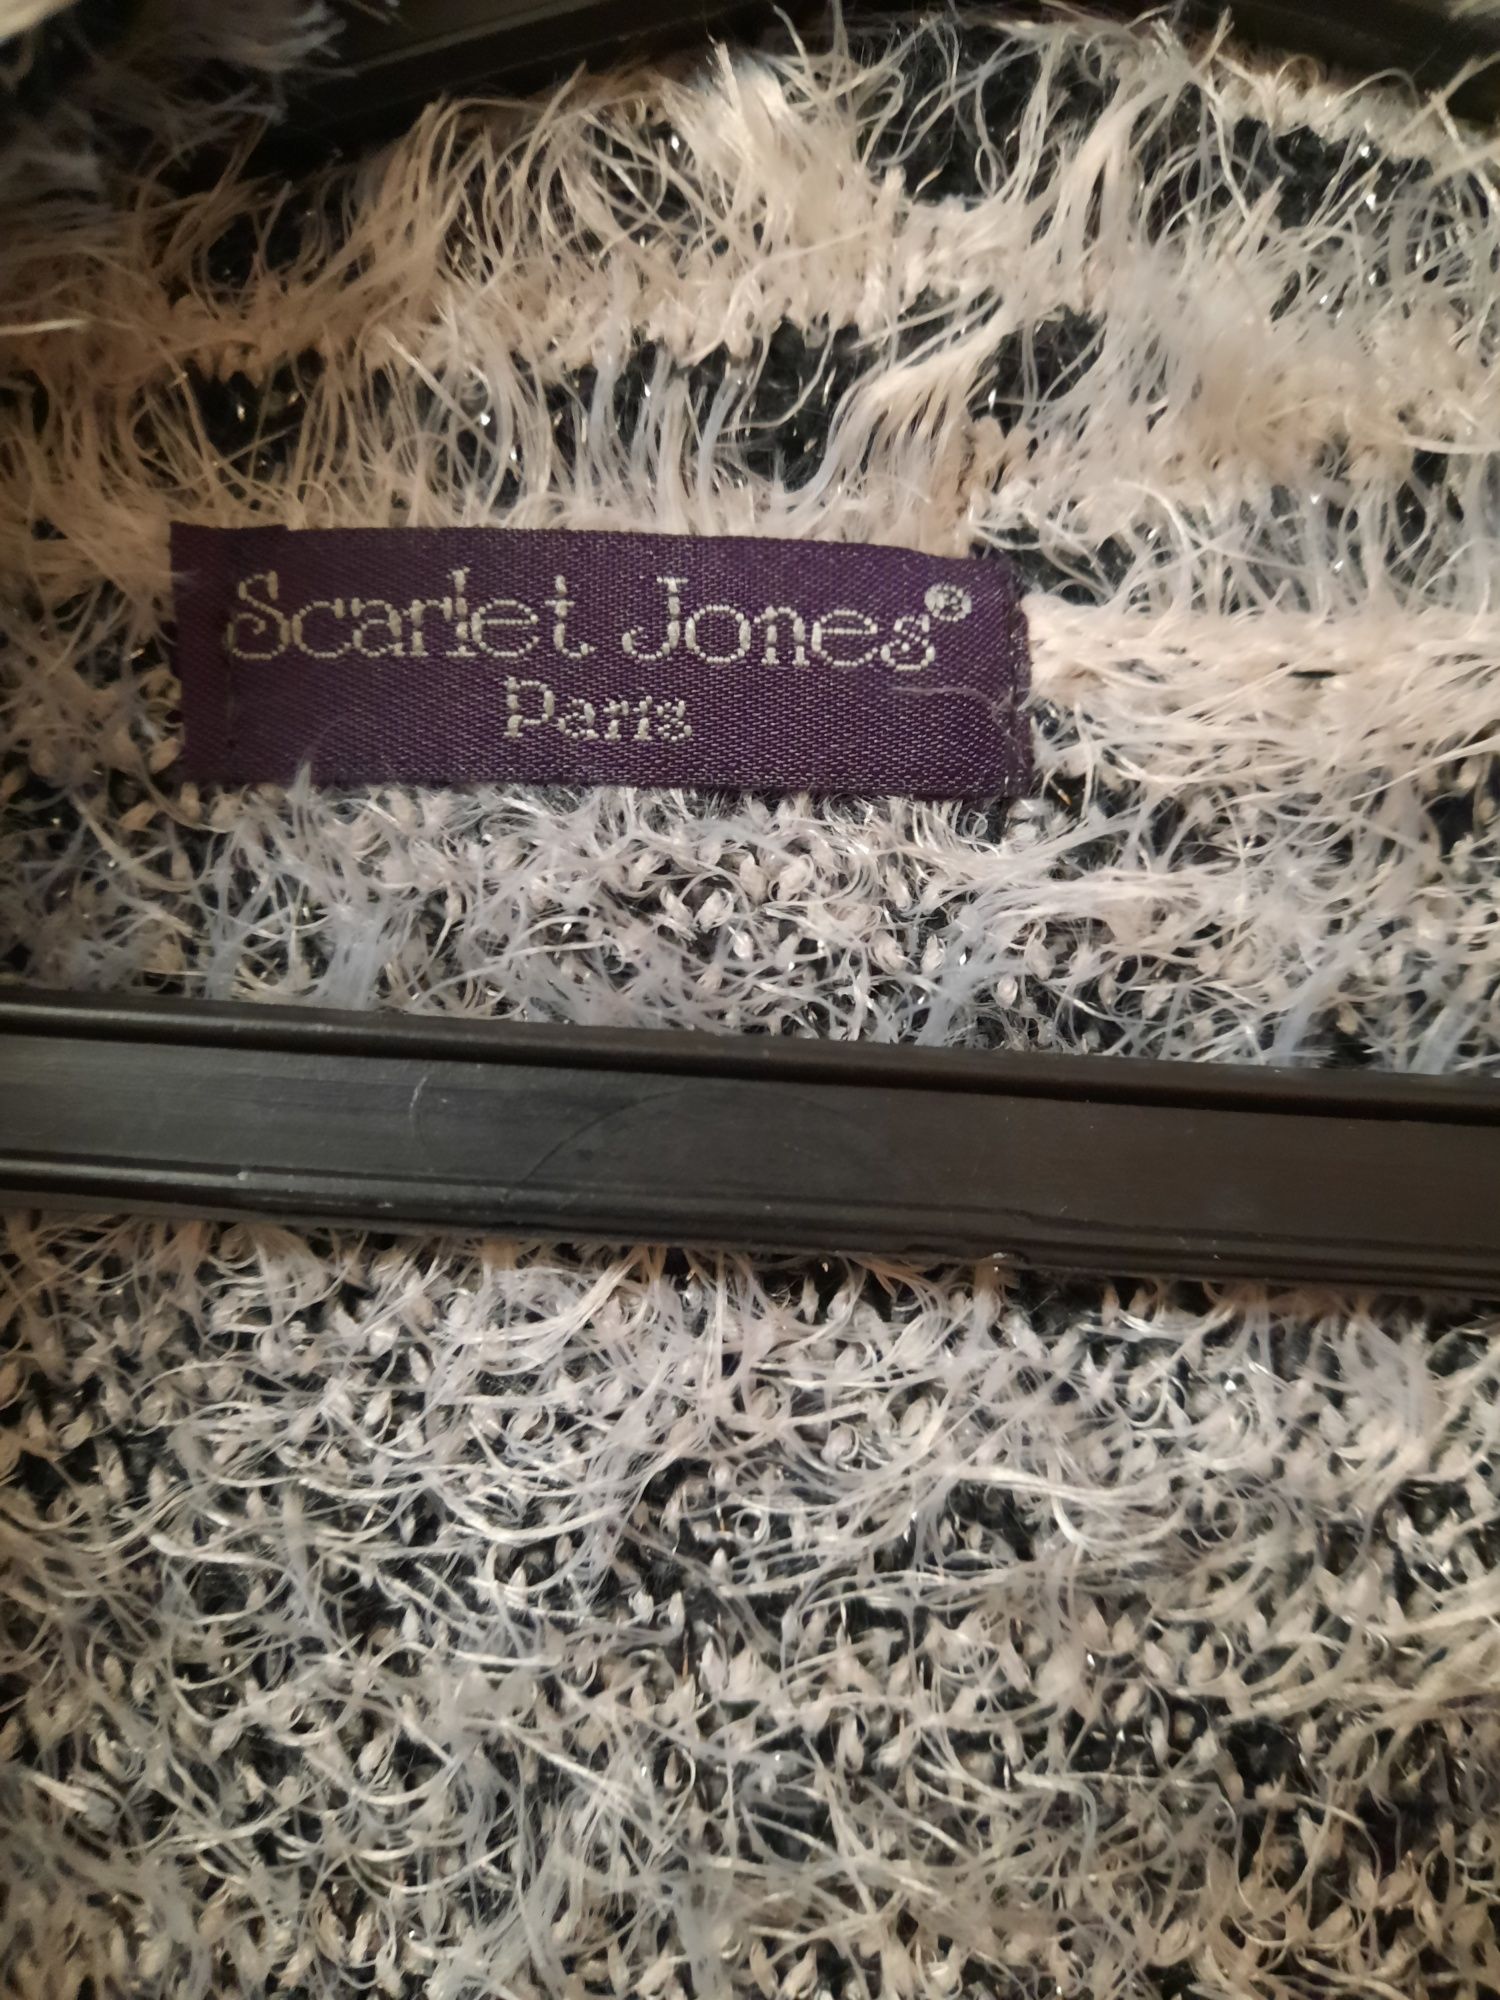 Дамска бутикова жилетка на марката Scarlet Jones Paris